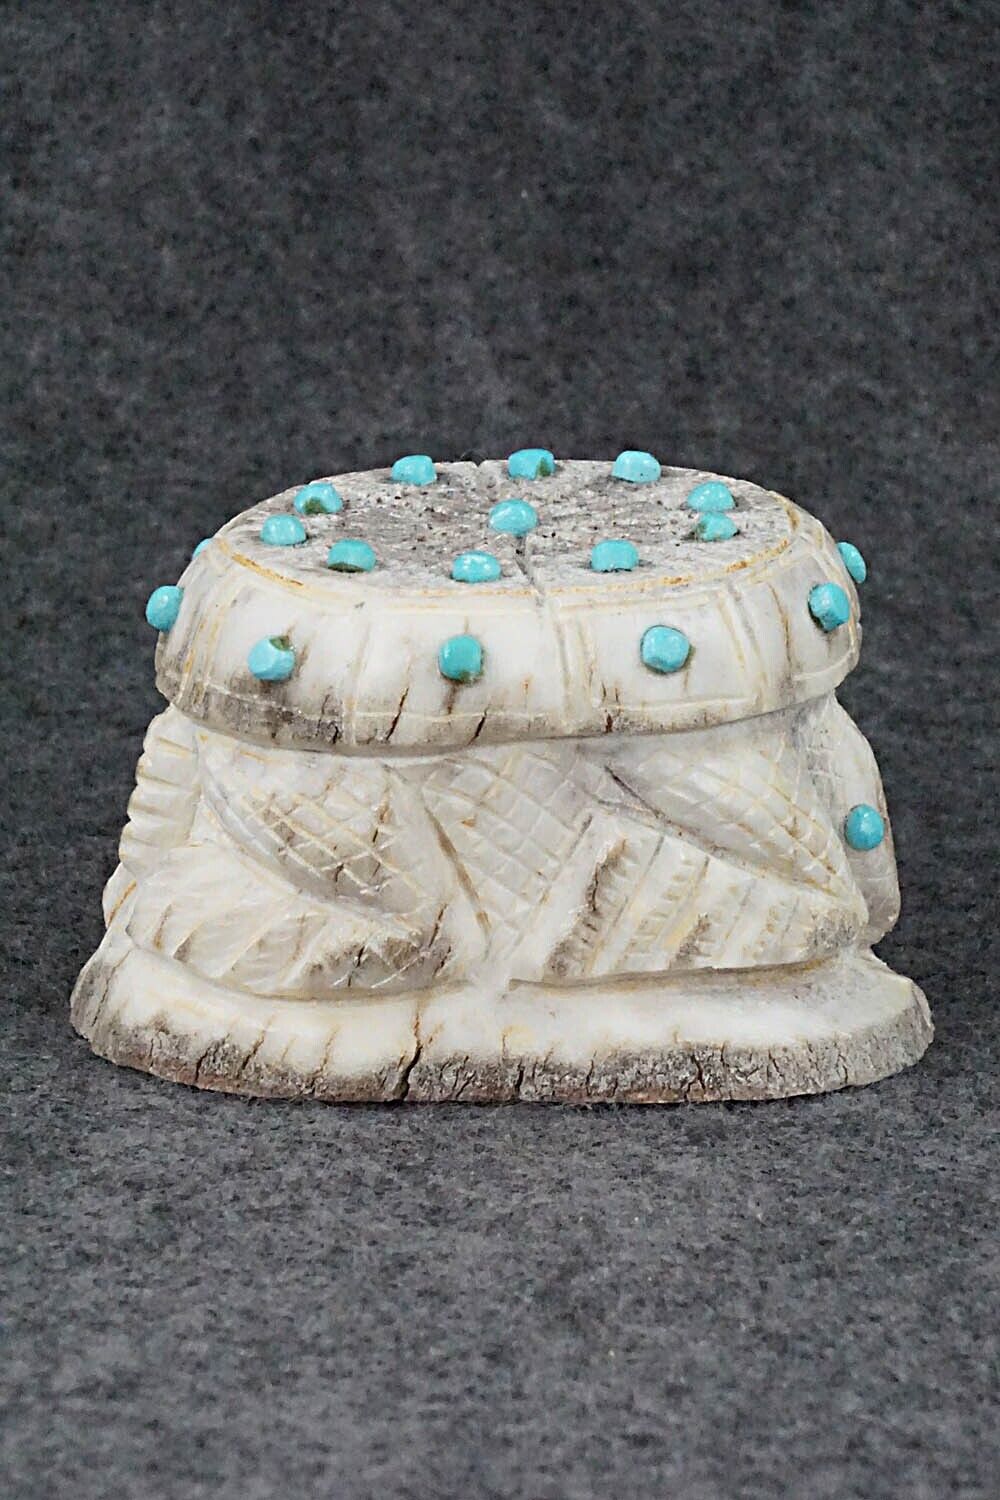 Turtle Zuni Fetish Carving - Garrick Weeka